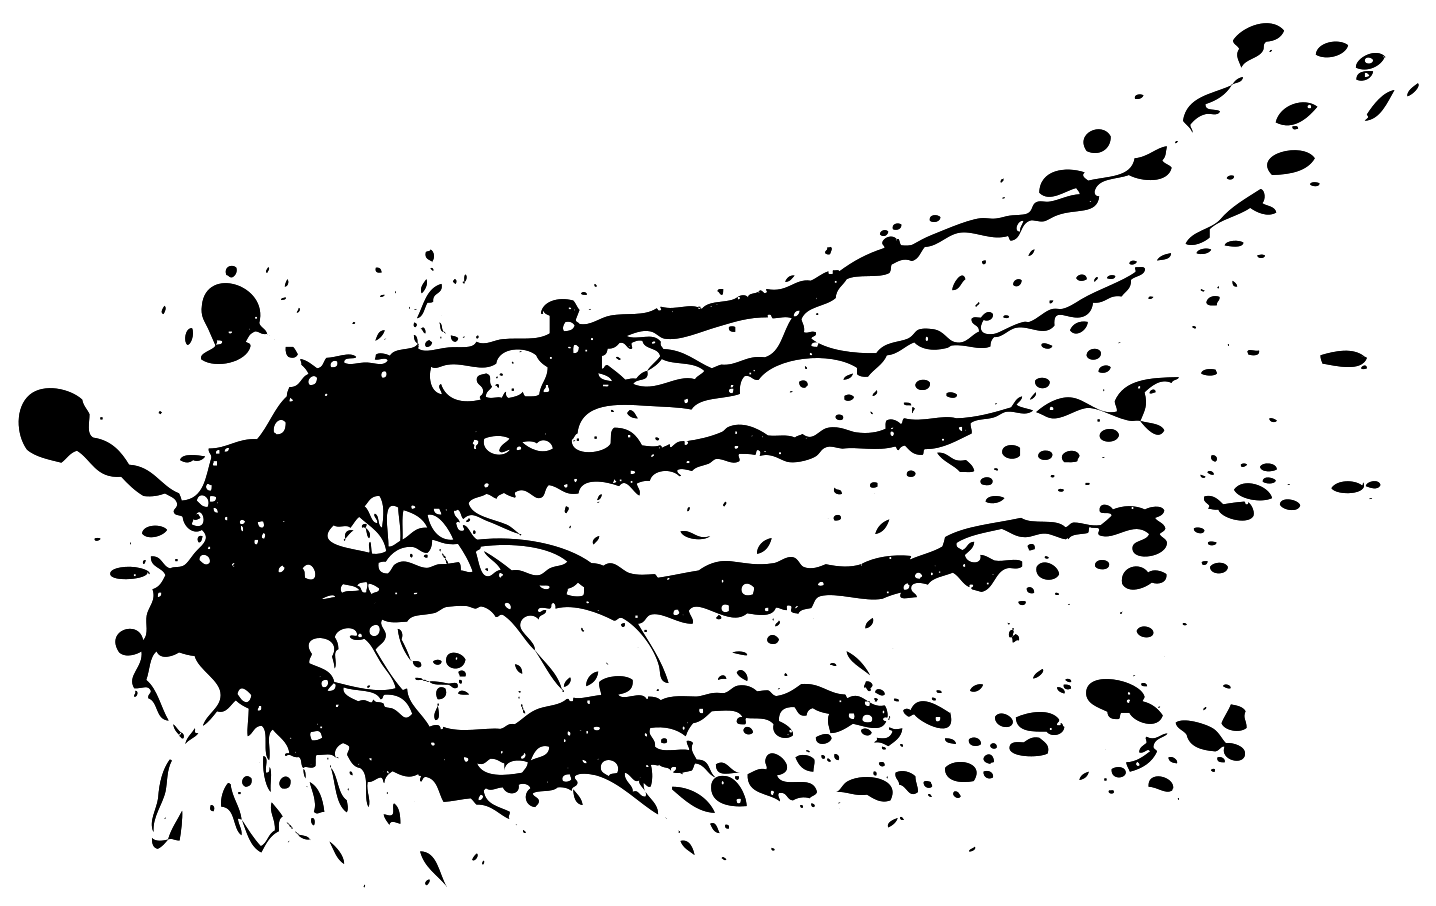 Black Splatter Background PNG Image